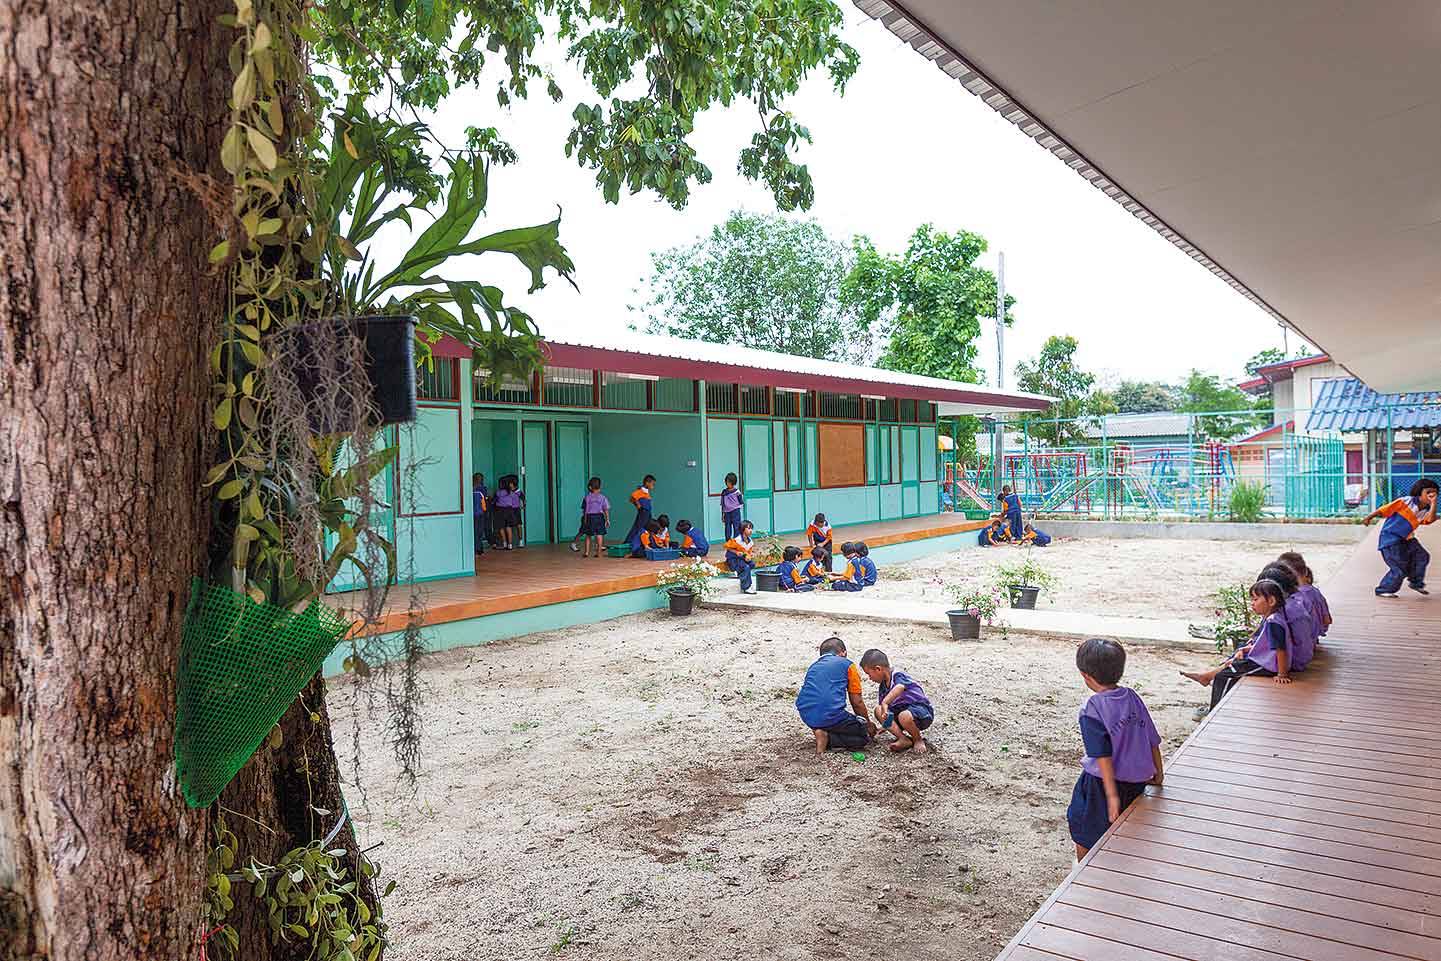 ร่มไม้ใหญ่ช่วยเชื่อมโยงพื้นที่กลางแจ้งสู่ชานไม้และห้องเรียน